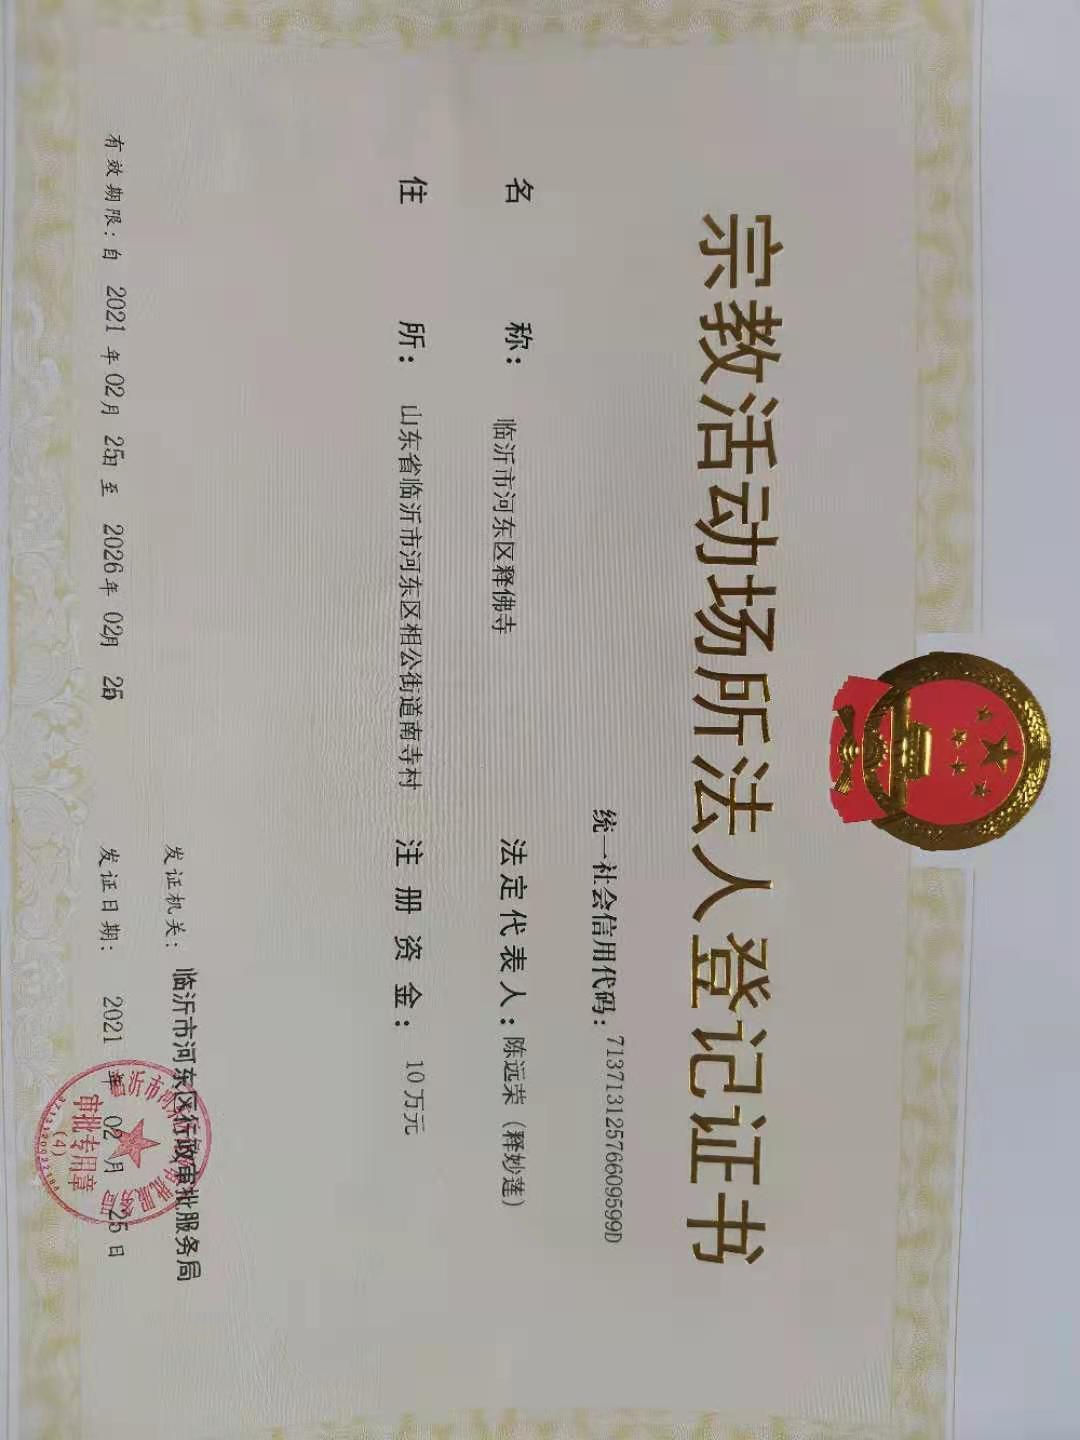 临沂市首张宗教活动场所法人登记证书在河东区获批